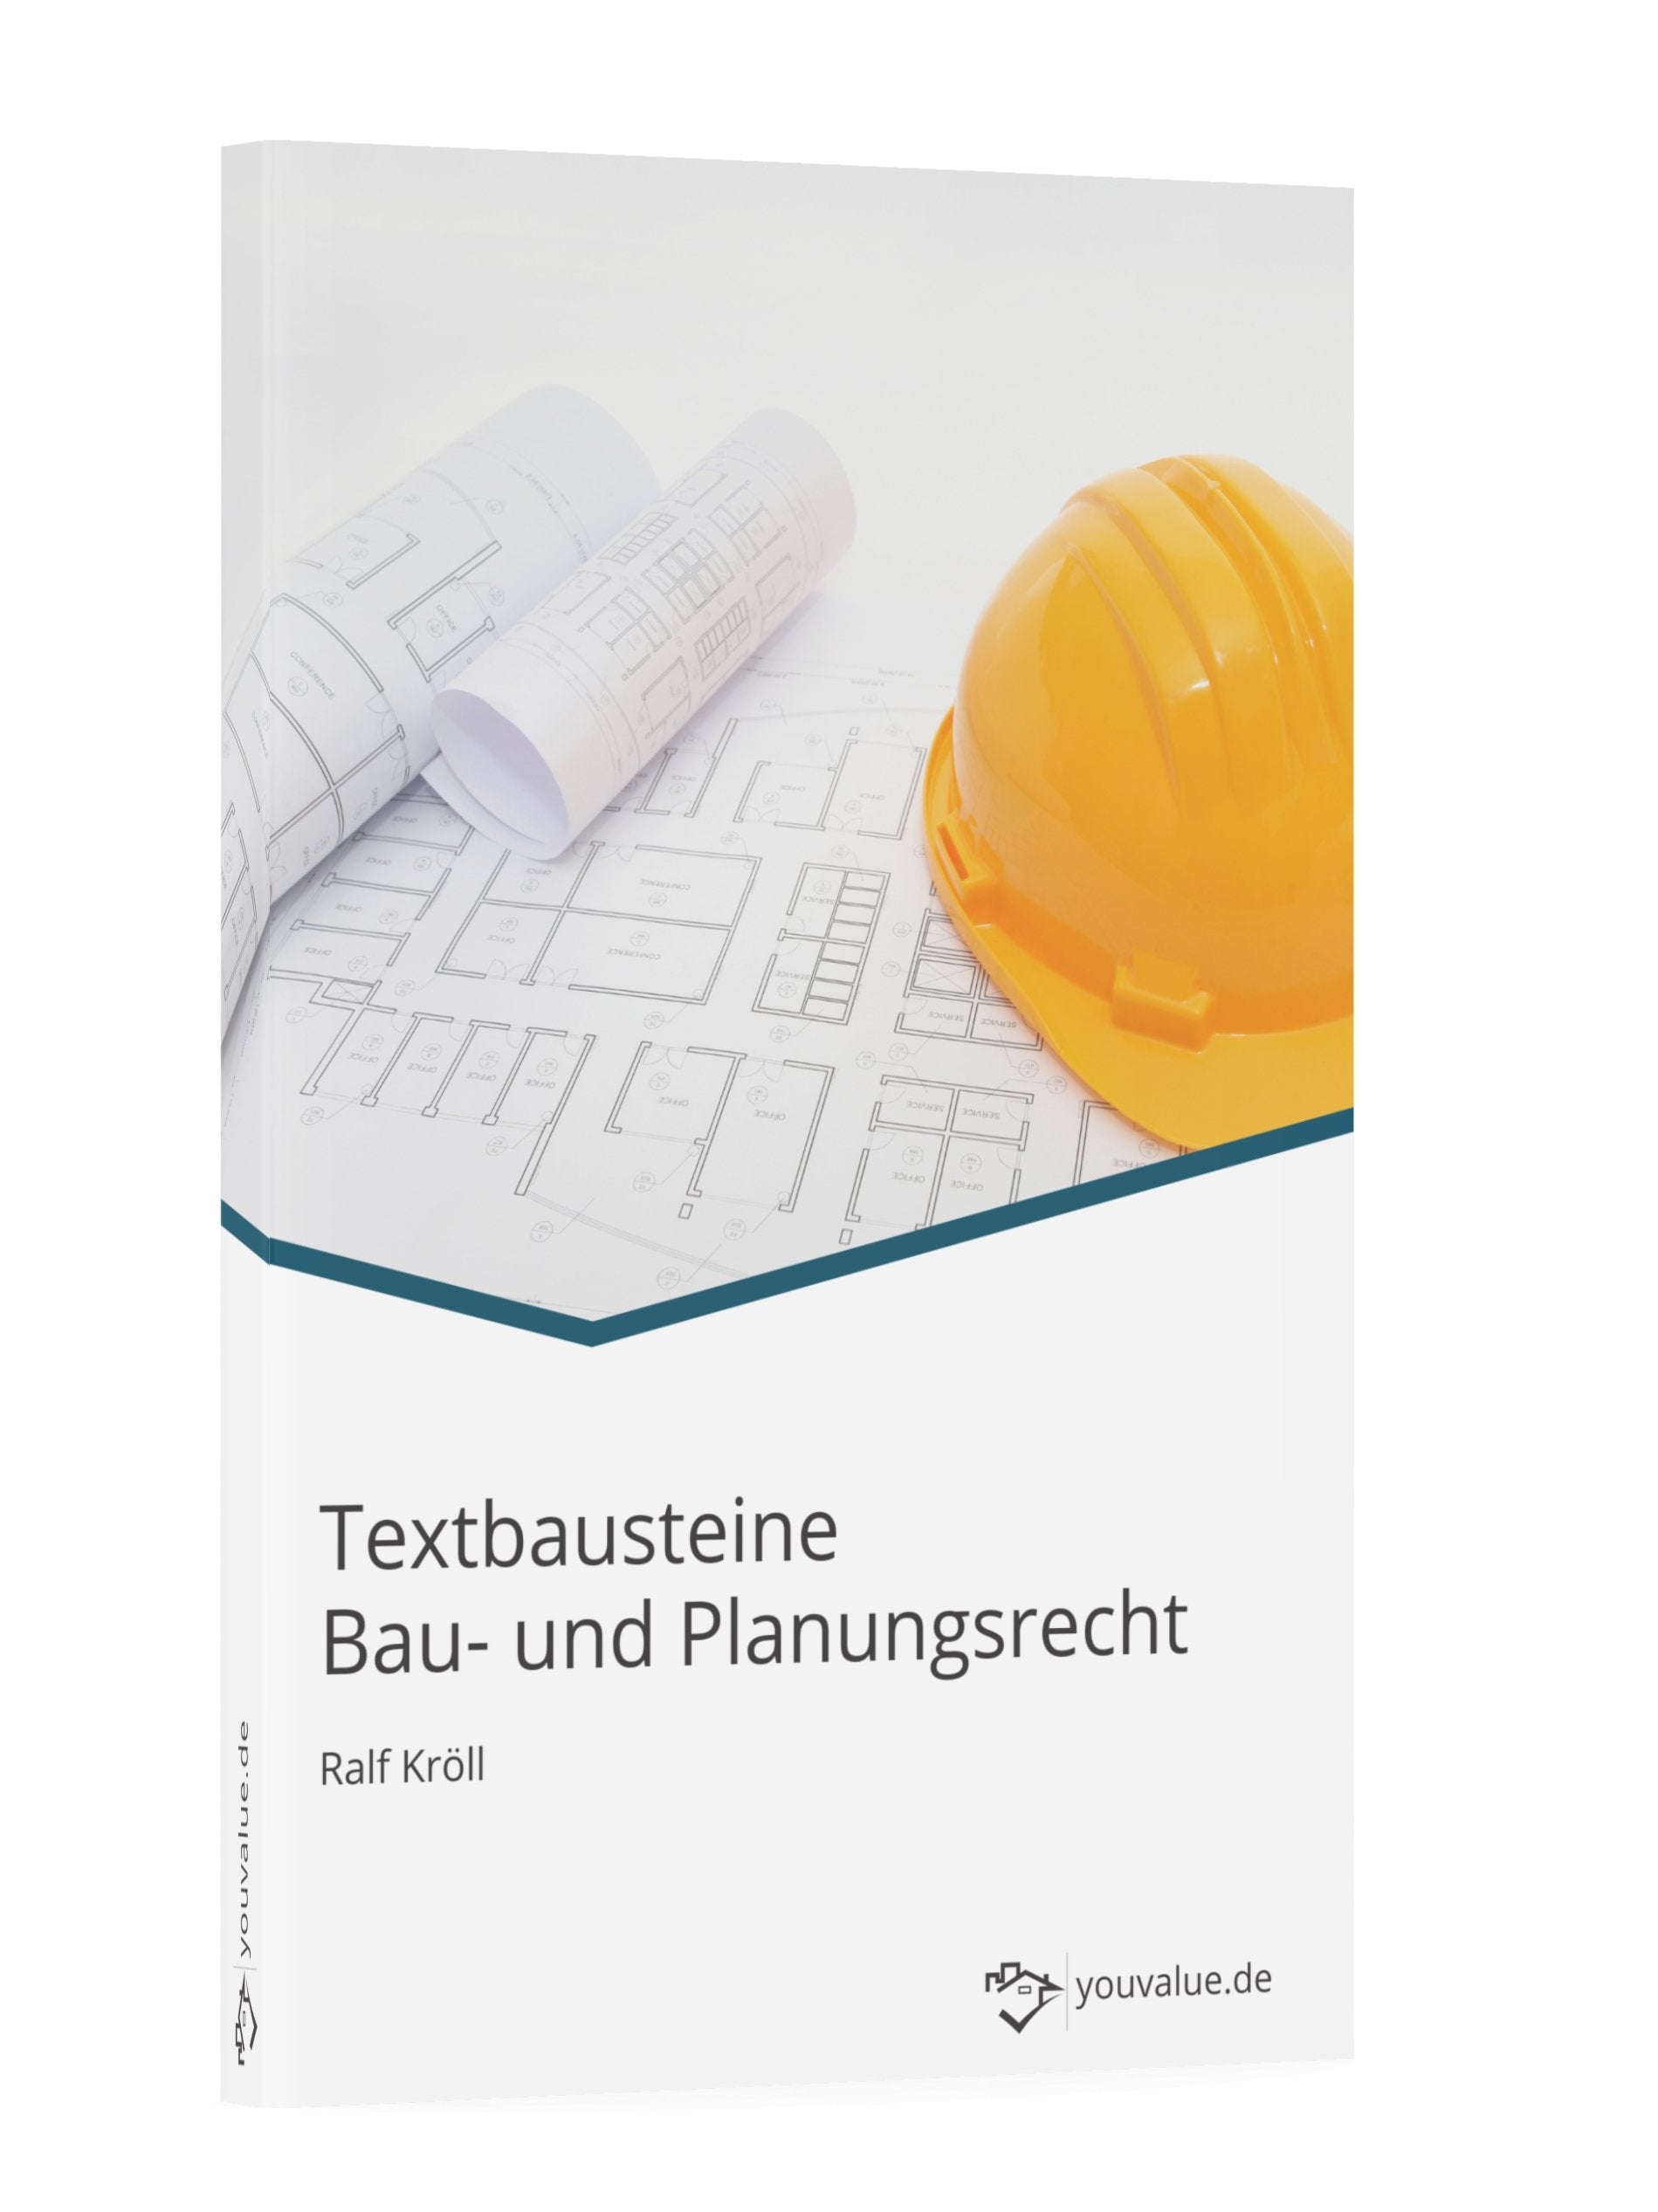 Textbausteine Bau- und Planungsrecht - Youvalue